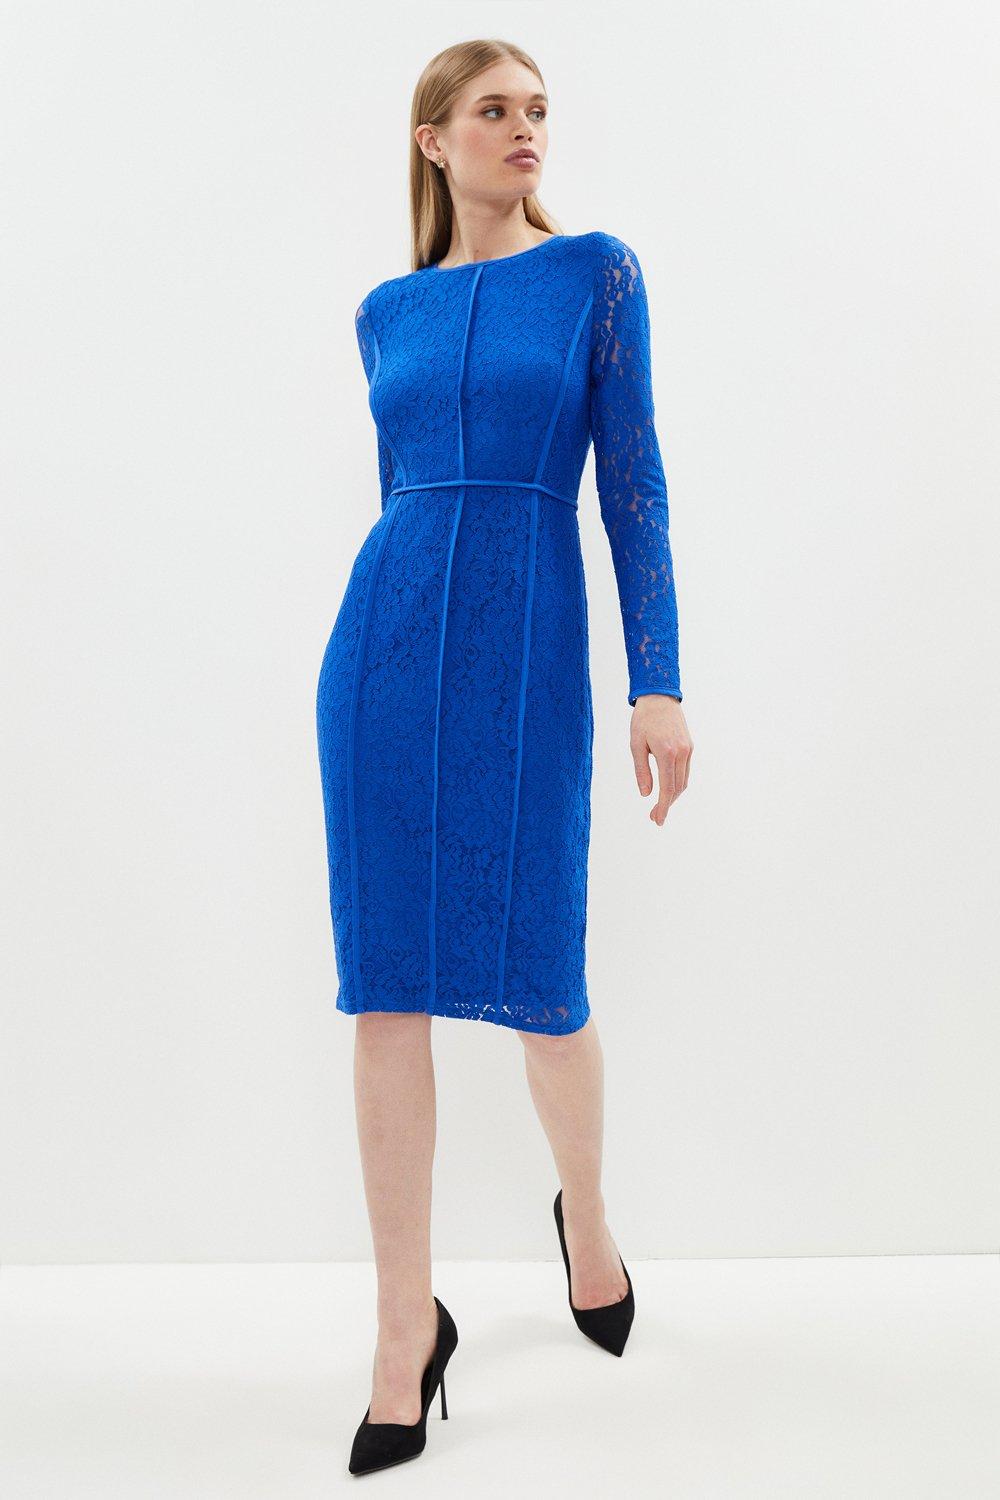 Panelled Lace Pencil Dress - Blue